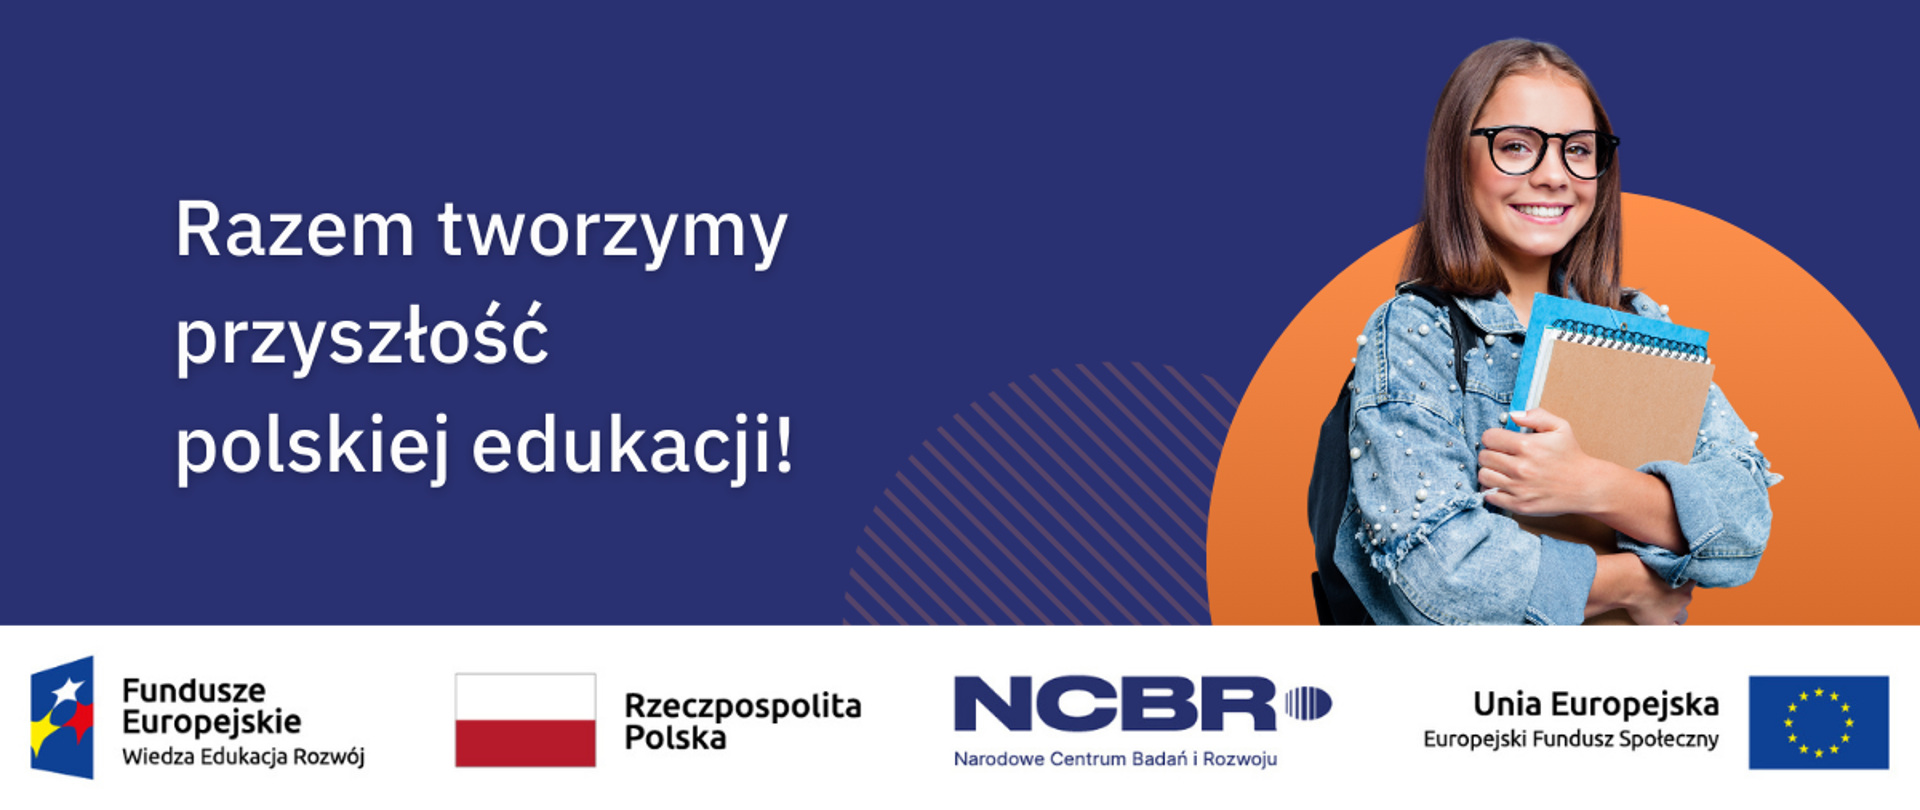 Fundusze Europejskie dla polskich uczelni: efekty projektów NCBR